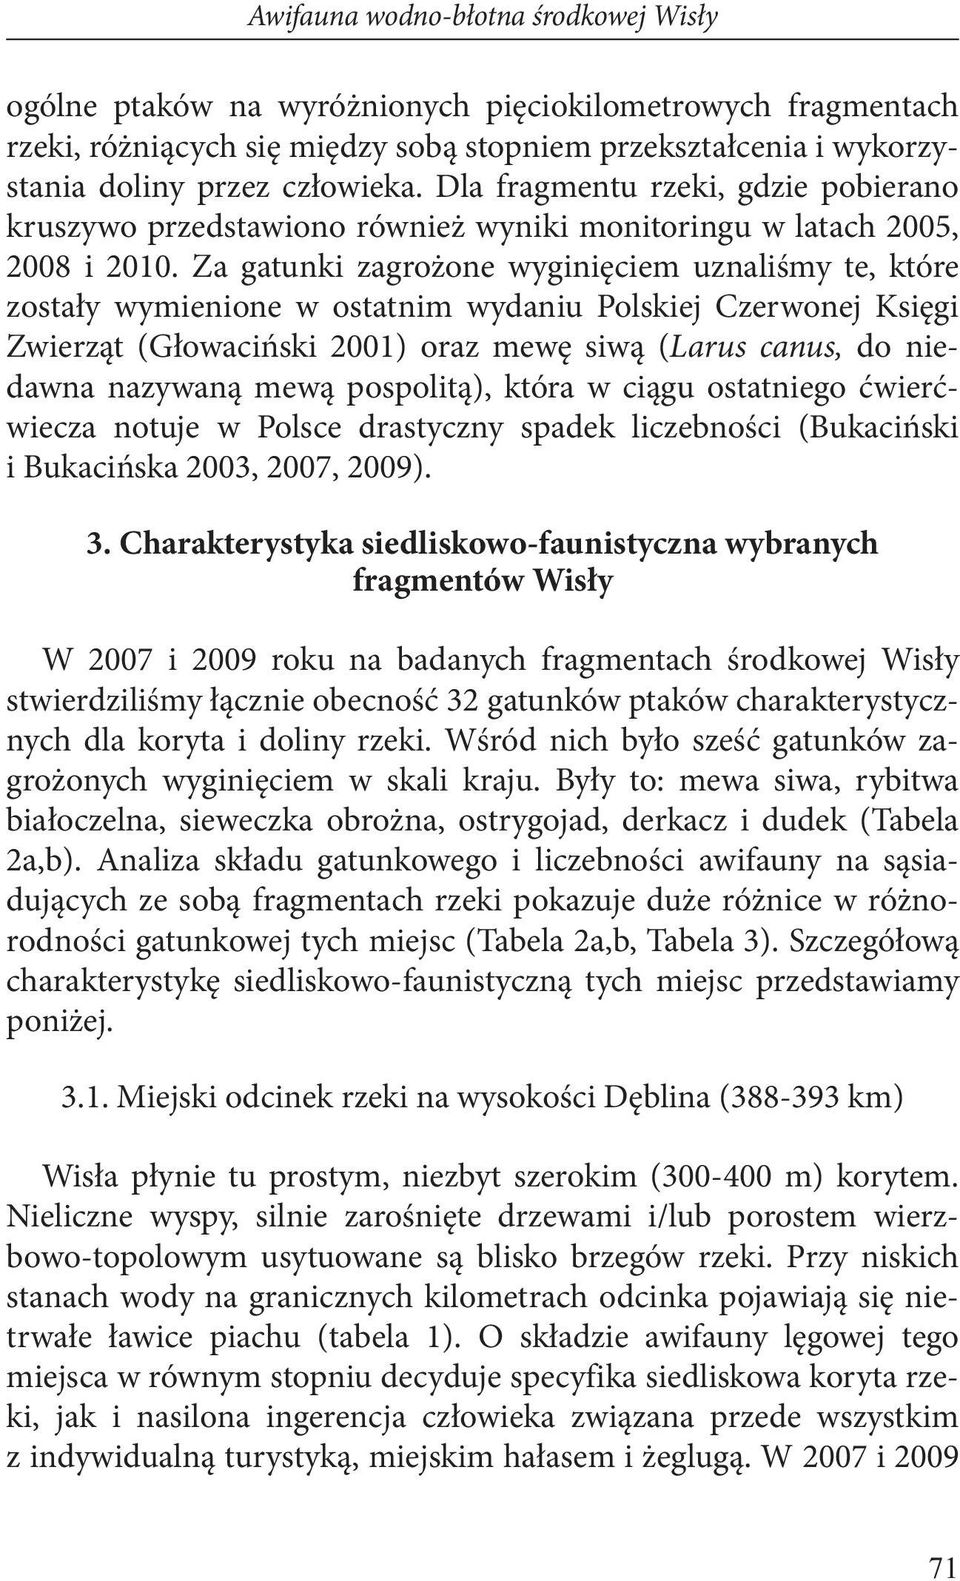 Za gatunki zagrożone wyginięciem uznaliśmy te, które zostały wymienione w ostatnim wydaniu Polskiej Czerwonej Księgi Zwierząt (Głowaciński 2001) oraz mewę siwą (Larus canus, do niedawna nazywaną mewą